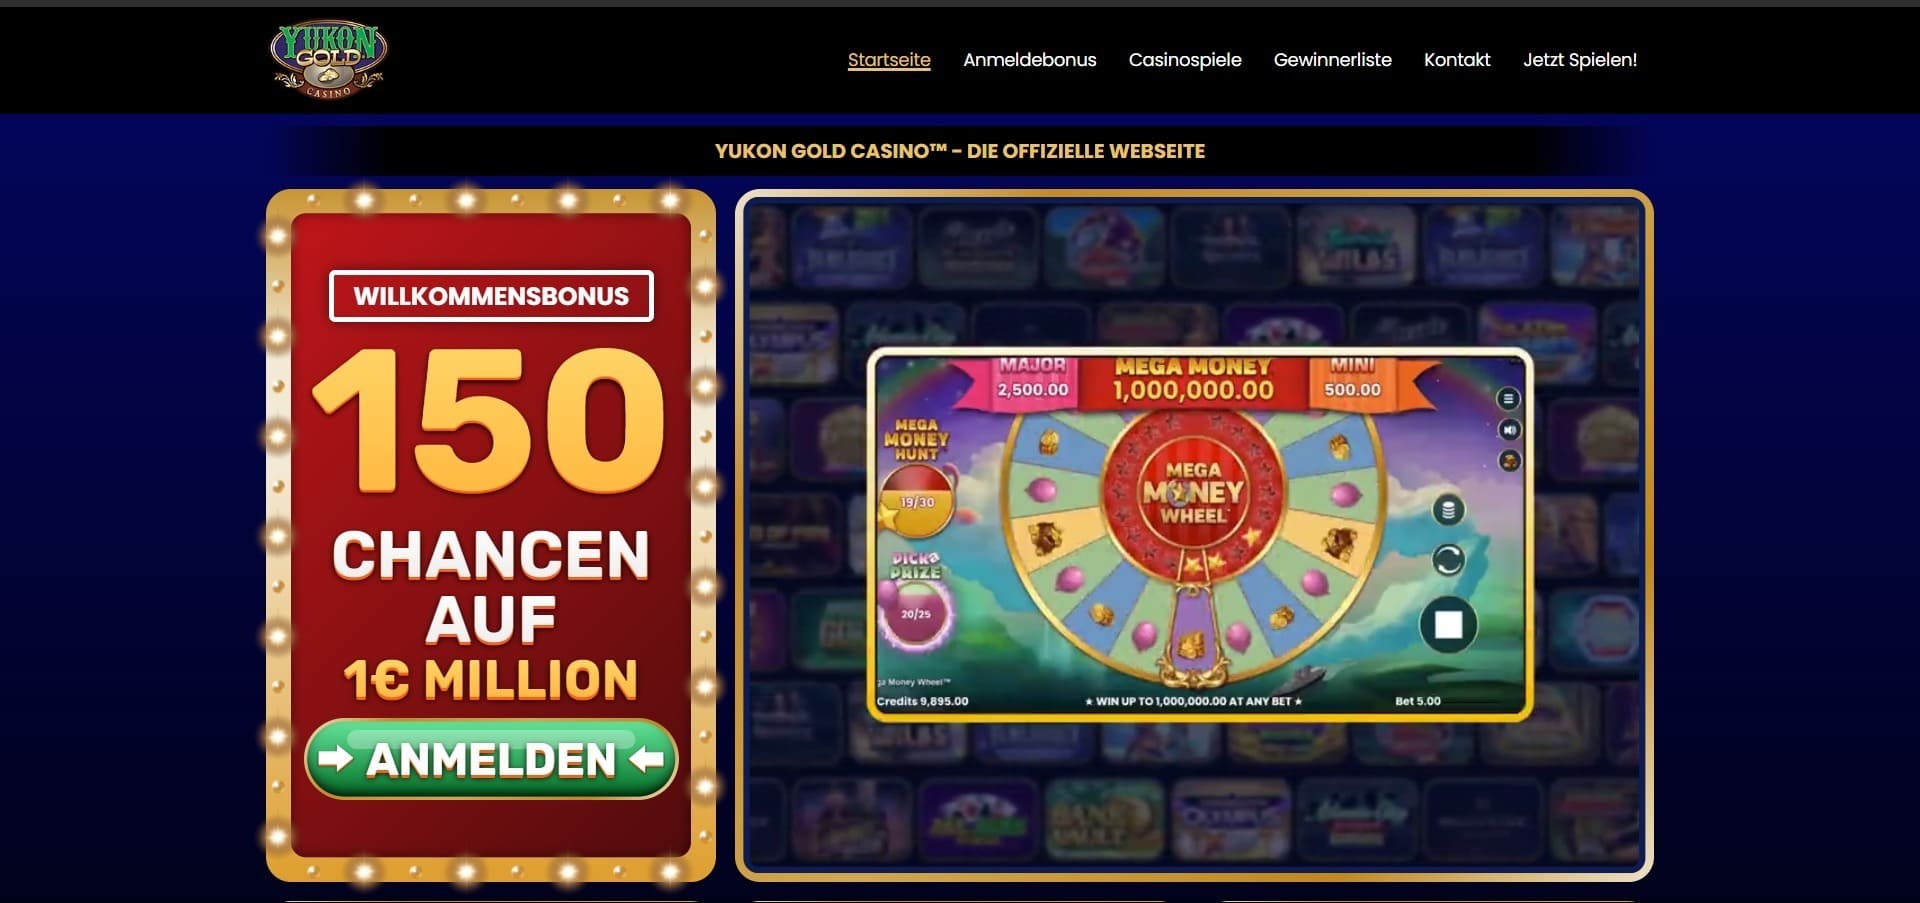 Offizielle Website der Yukon Gold Casino